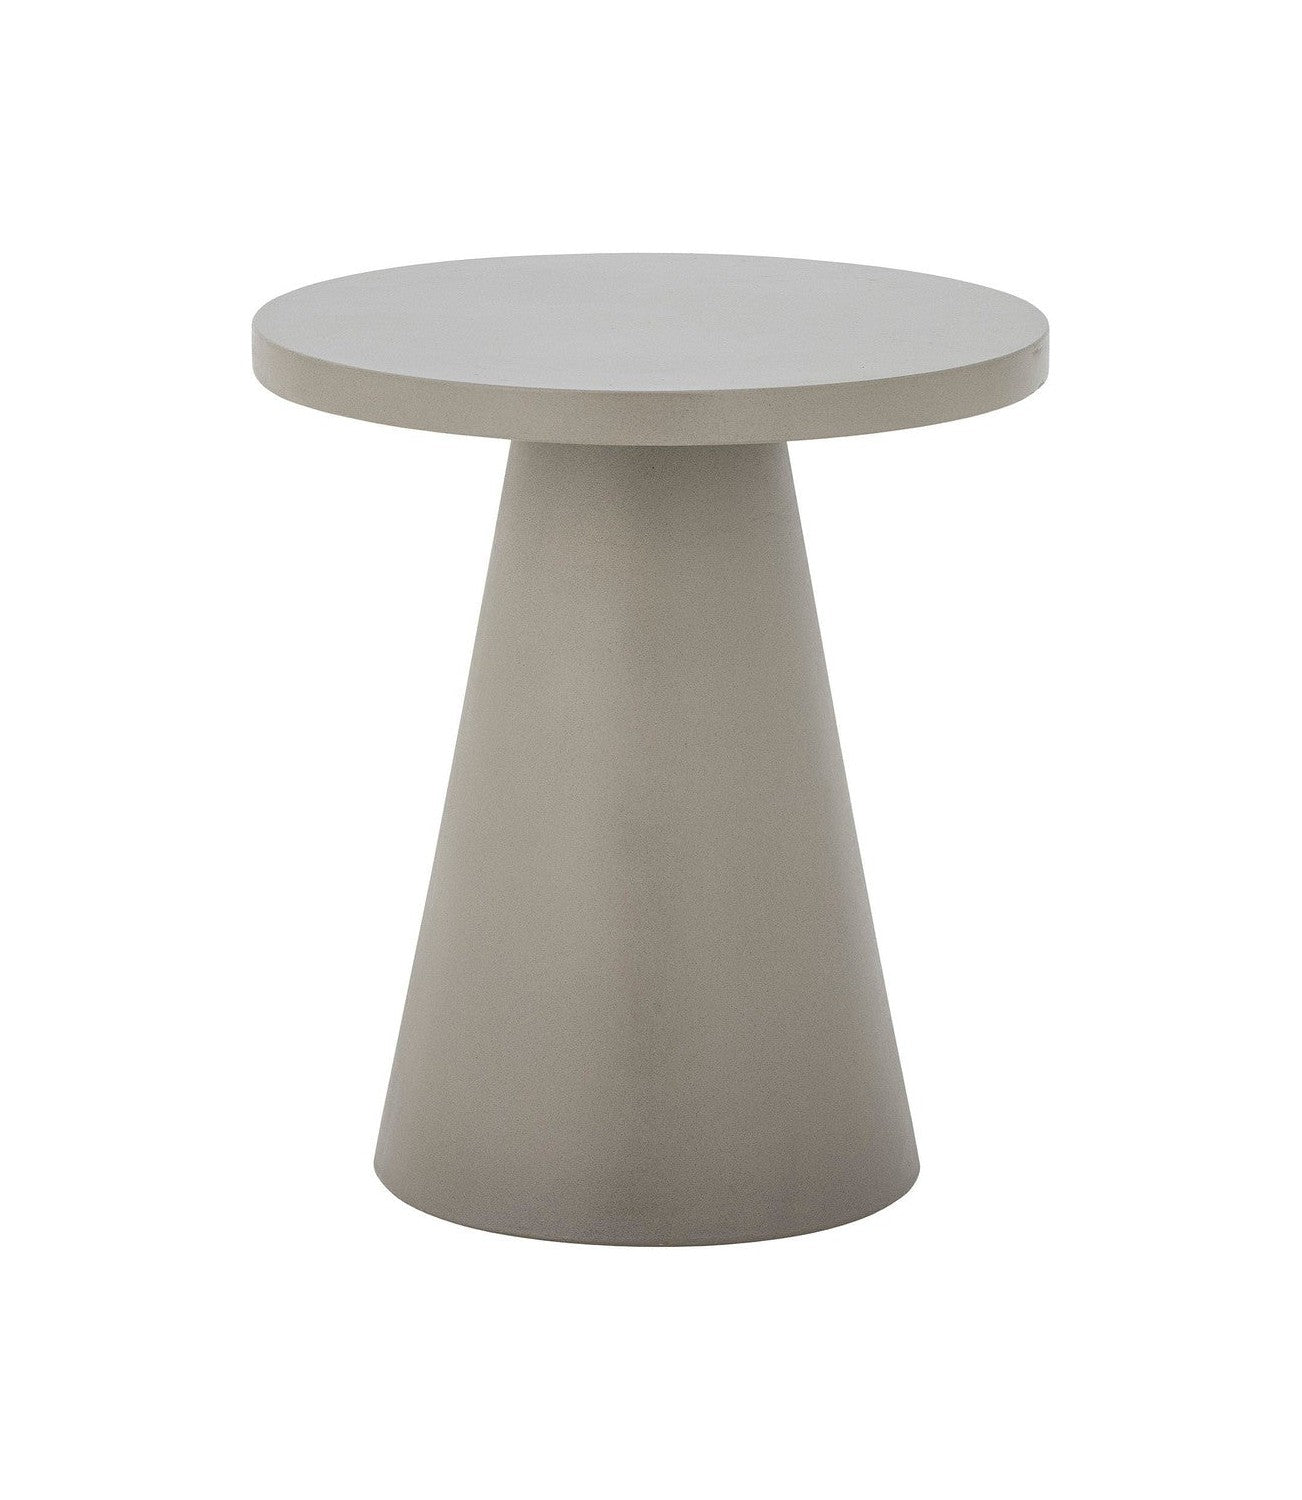 Boční stůl Bloomingville Ray, šedá, vláknový cement